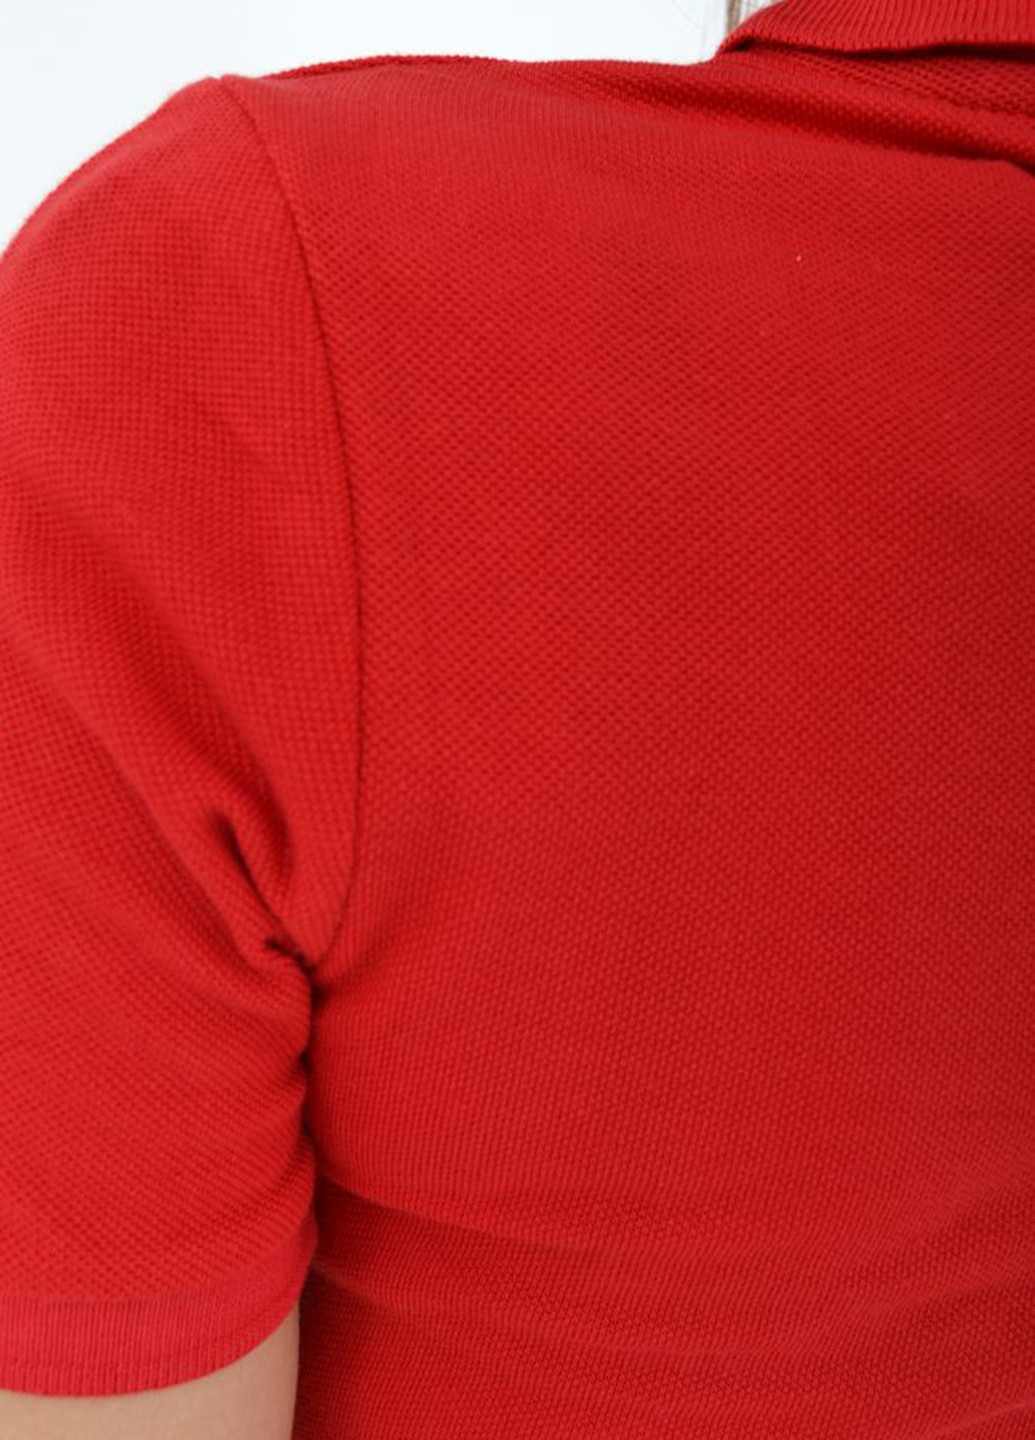 Красная женская футболка-поло Lagems однотонная